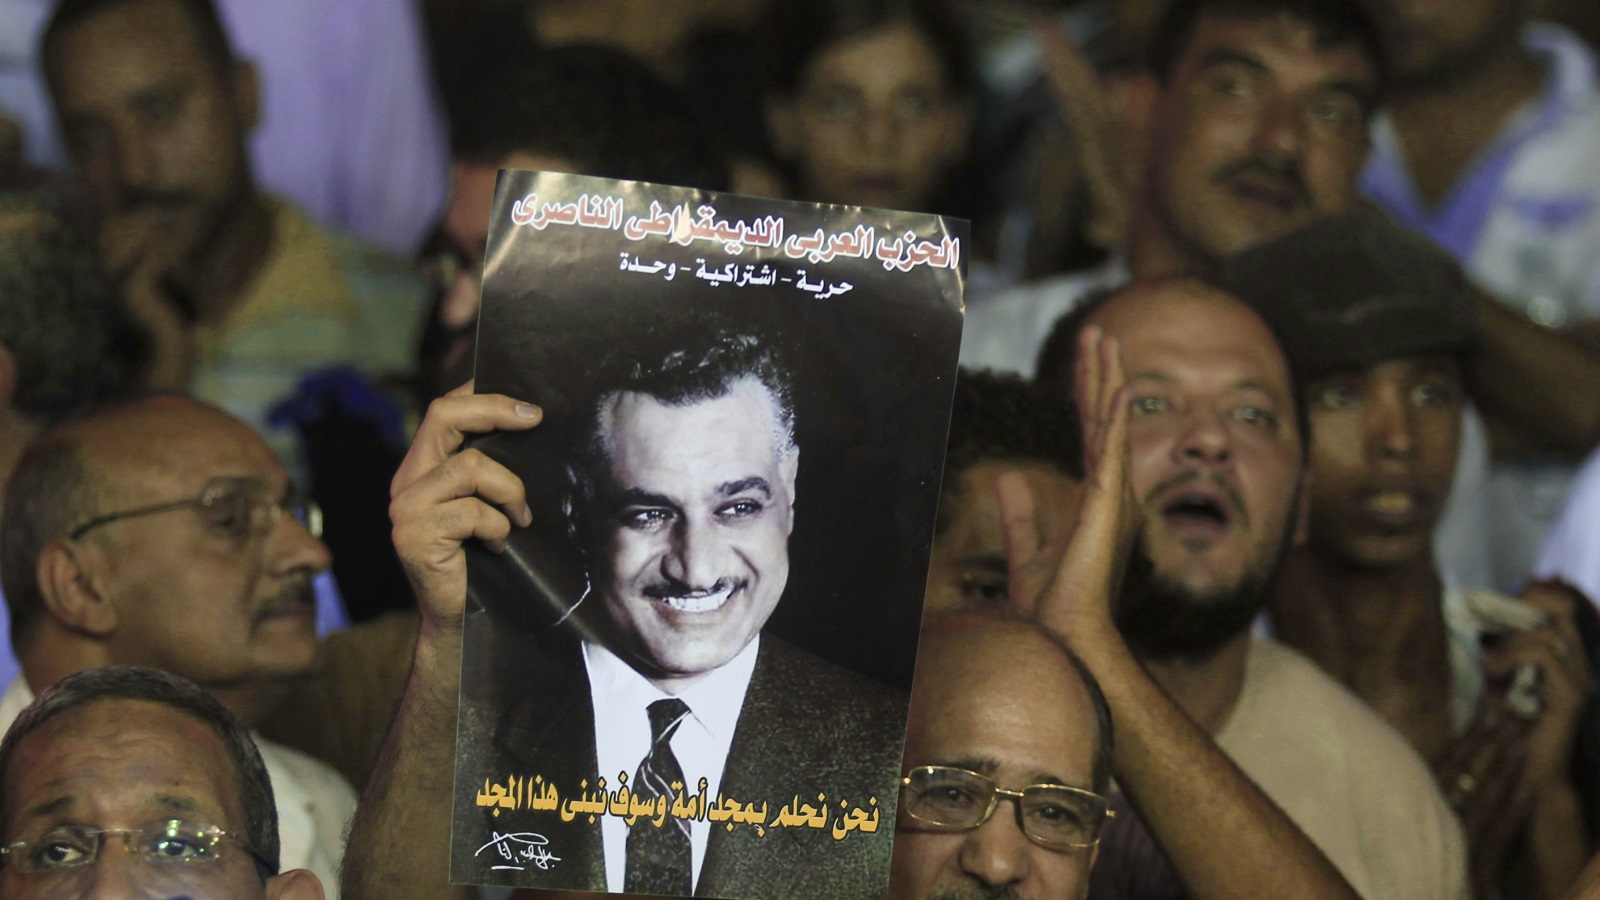 عبد الناصر ما هو إلا هالة افتعلها الإعلام الزائف والمناهج الدراسية المضللة. فبدلاً من أن يكون بداية للإصلاح السياسي والاقتصادي في مصر فكان هو الخراب ذاته